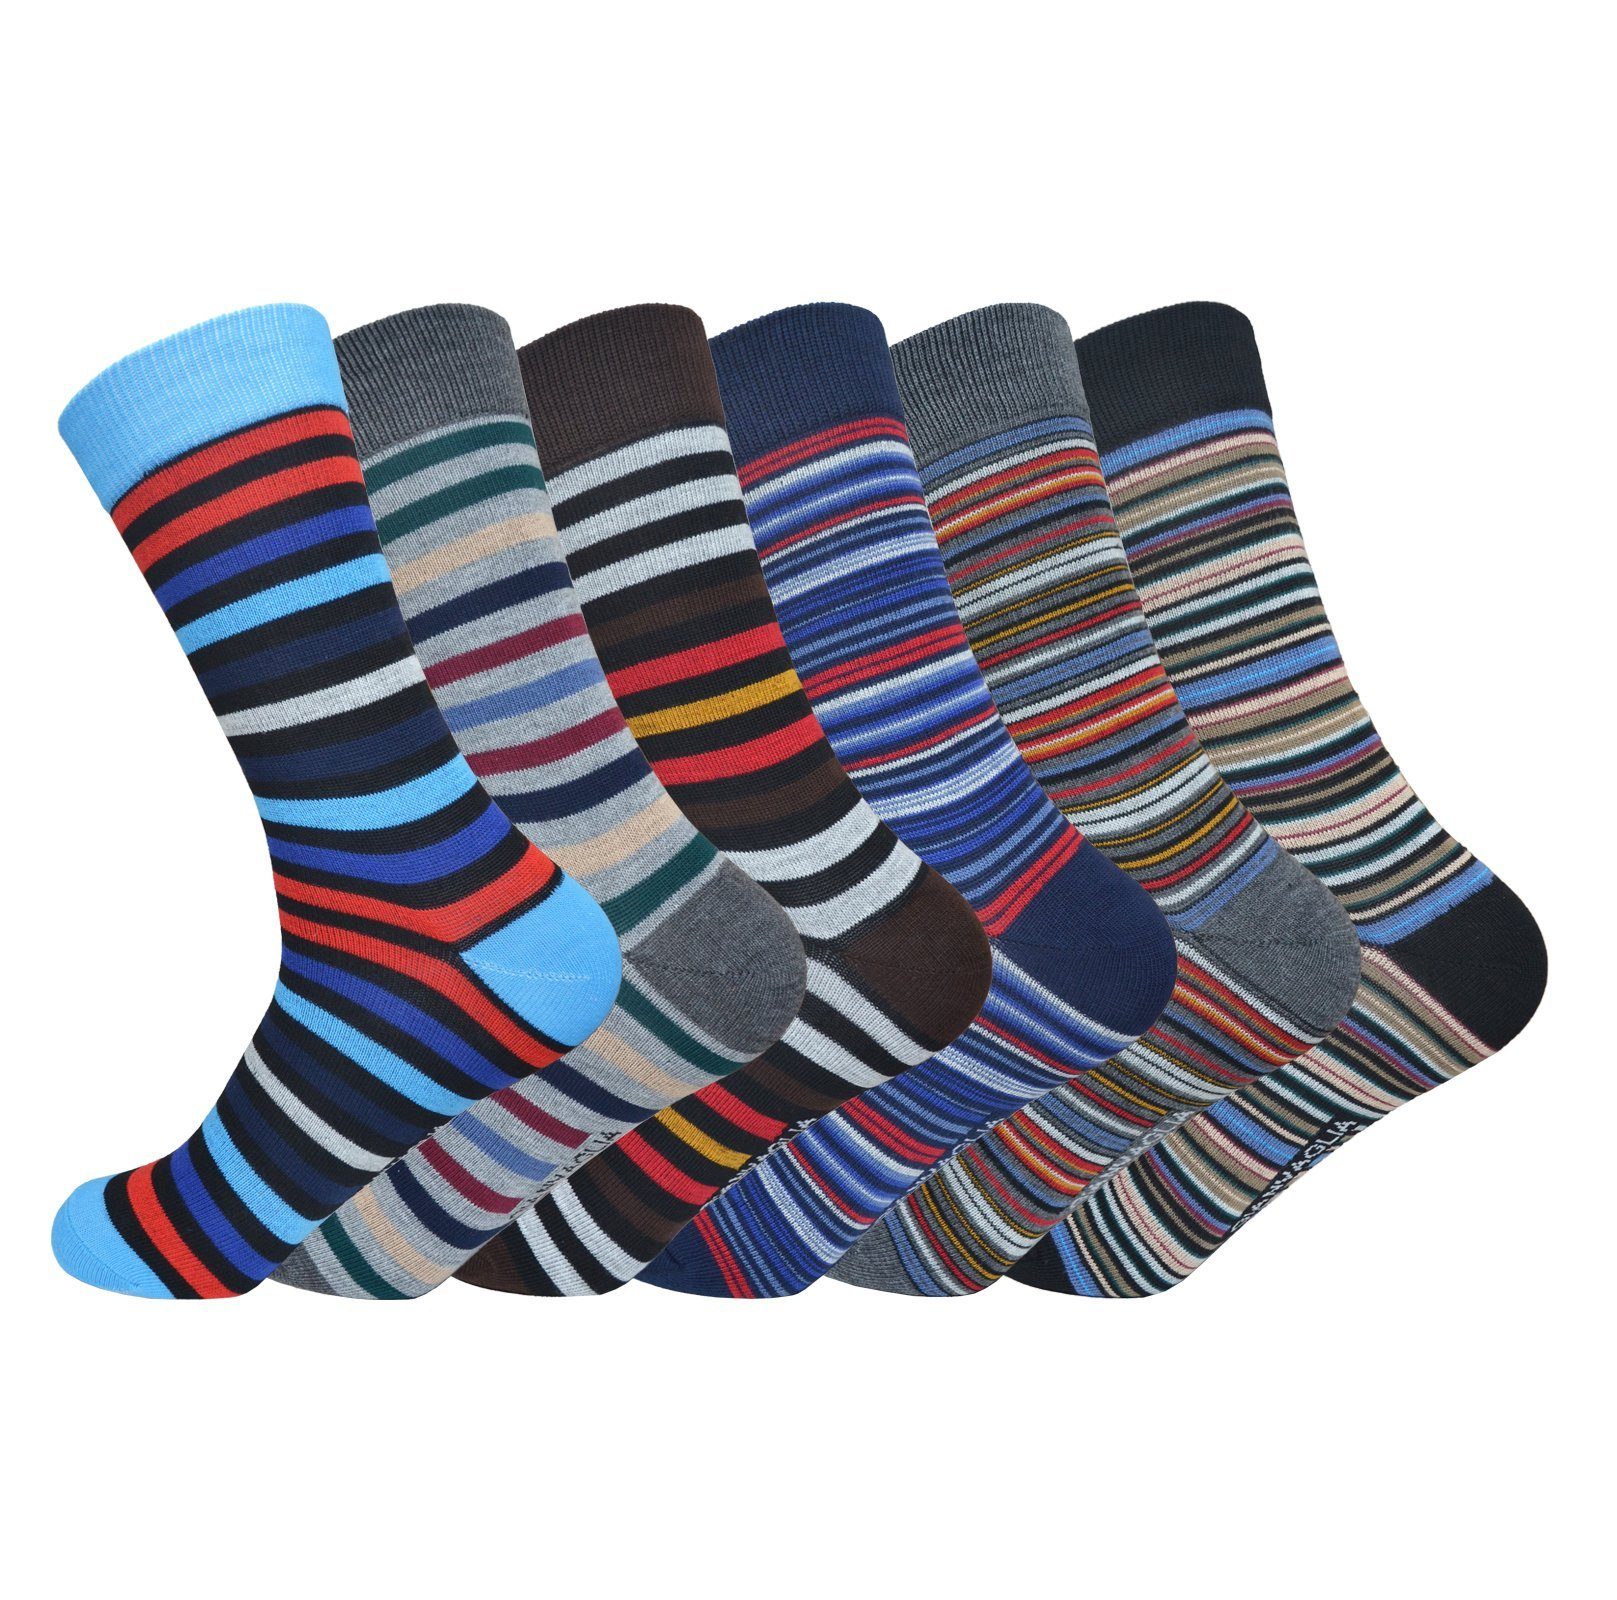 Markenwarenshop-Style Socken Socken Strümpfe 6 Paar 85% Baumwolle Gr. 39-42